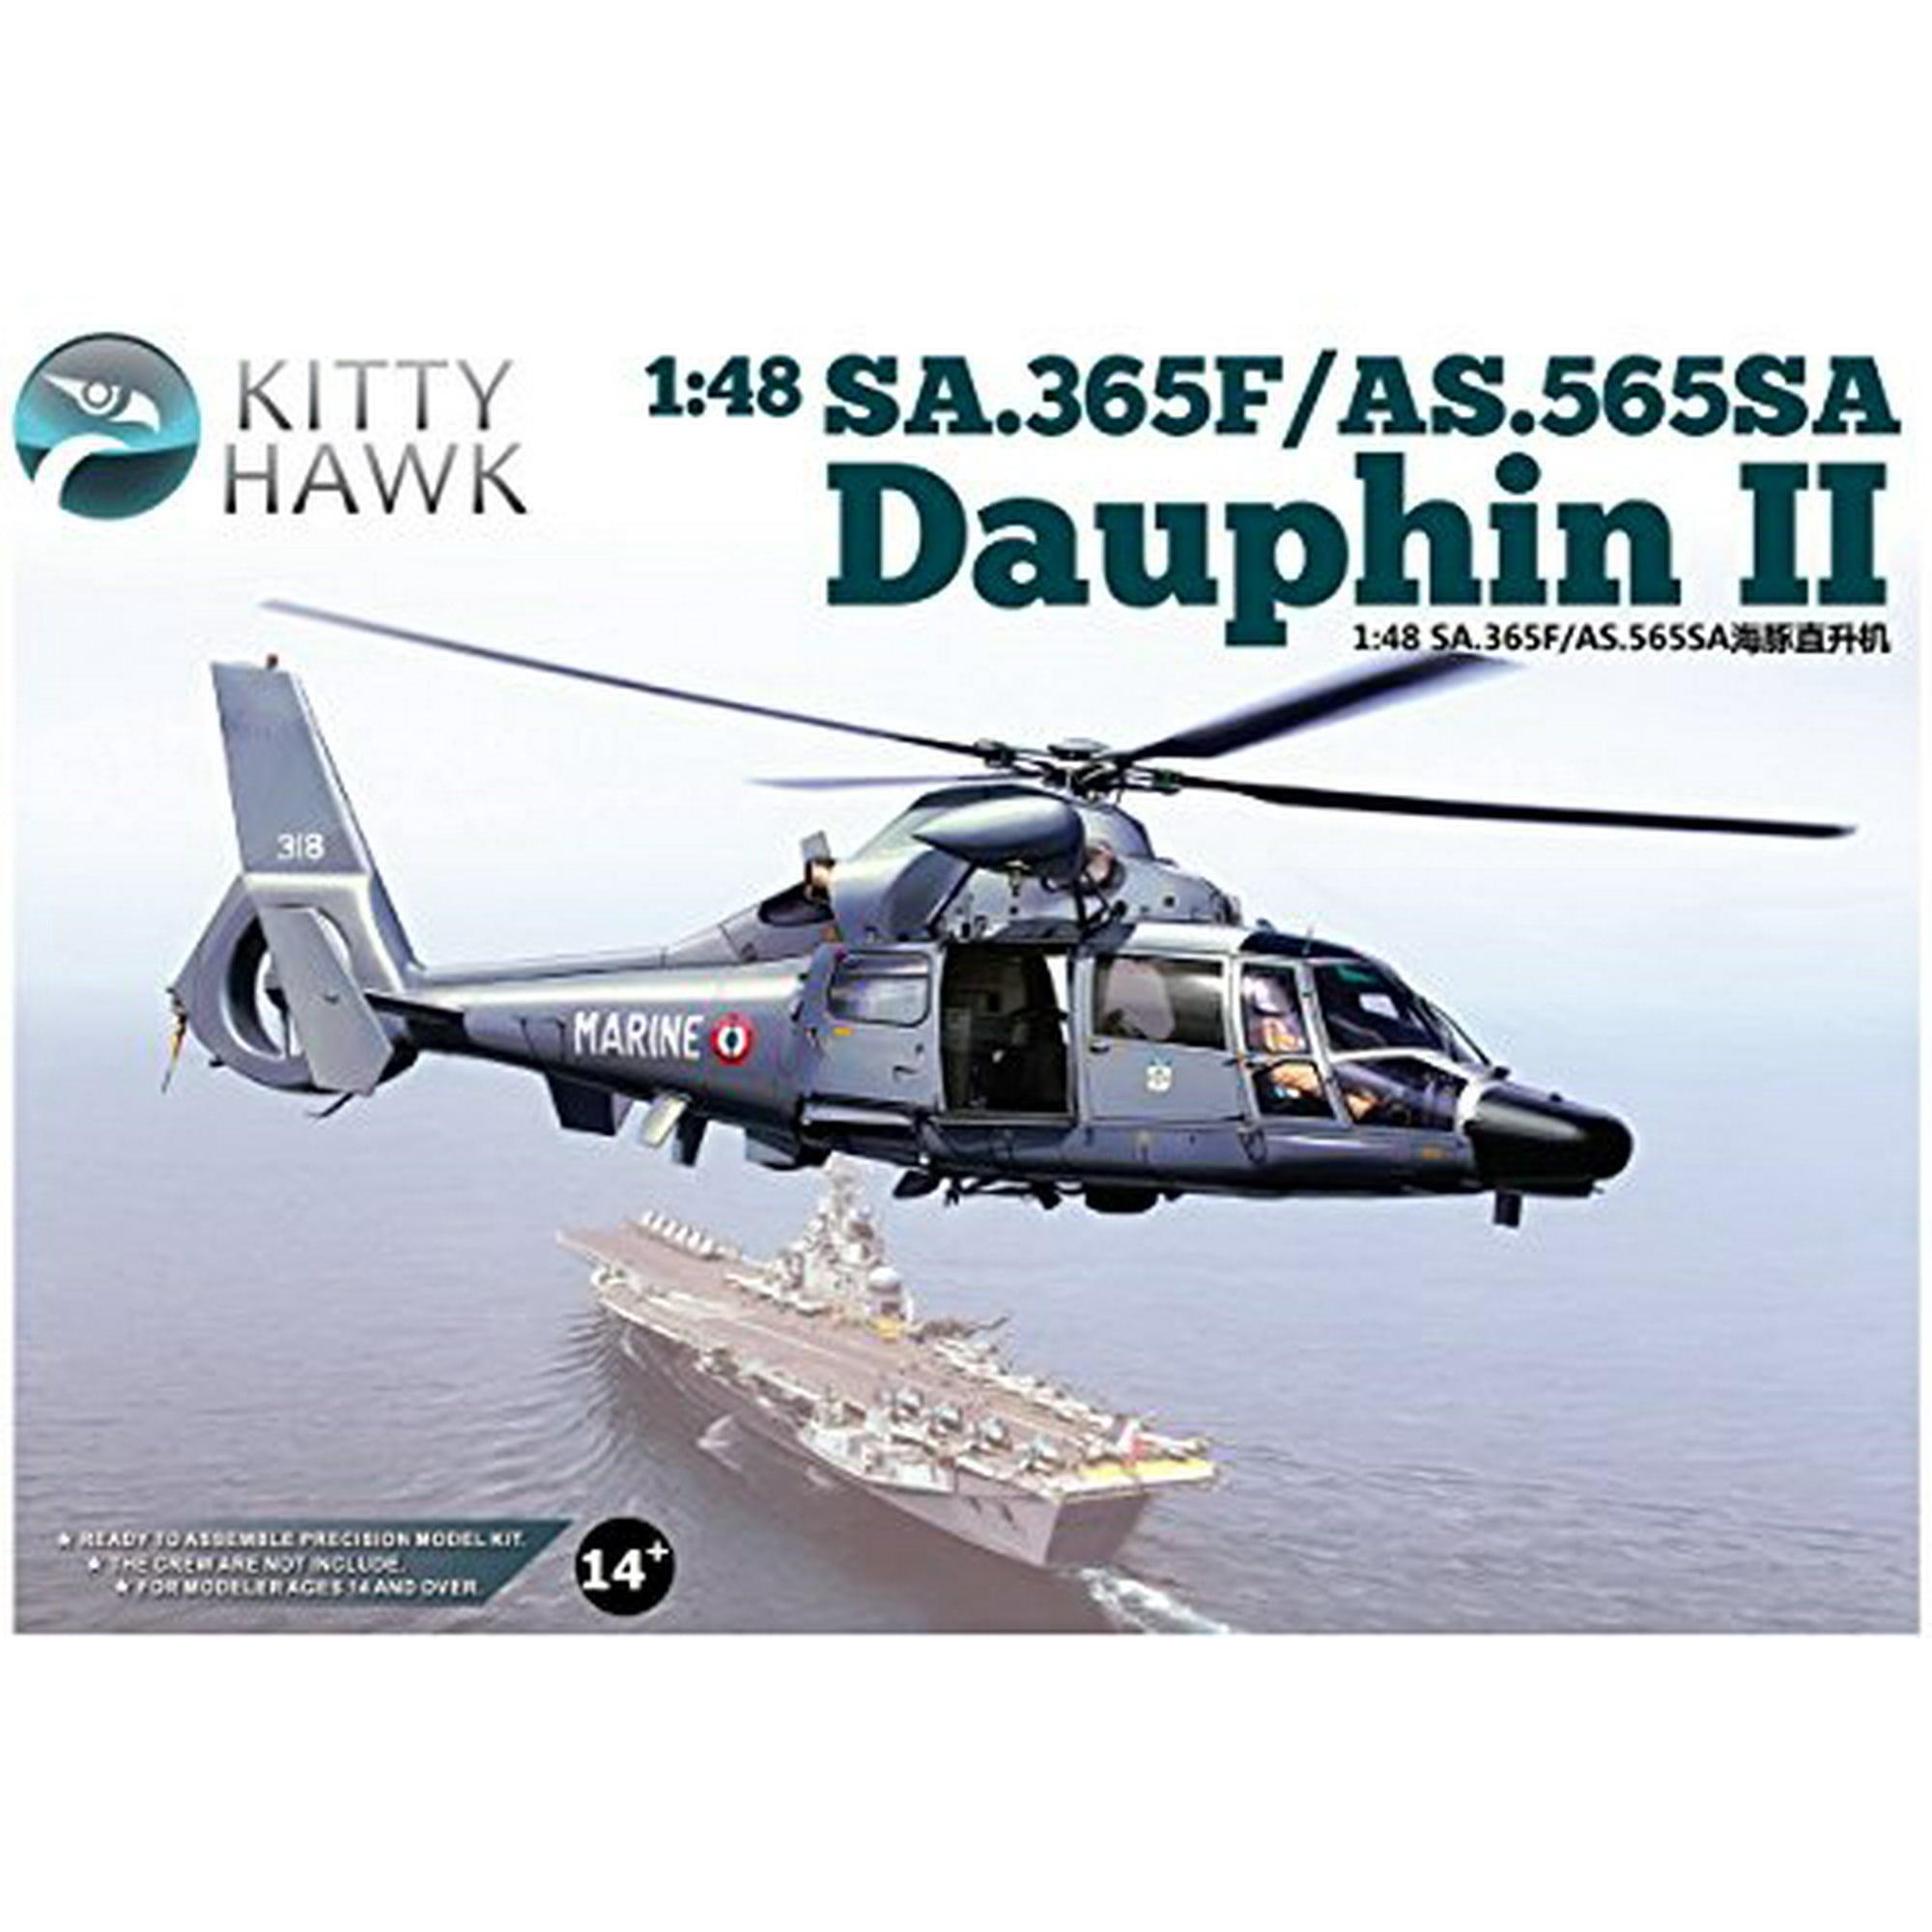 Kitty Hawk KH80107 1/48 scale Dauphin II SA.365N model kit 2019